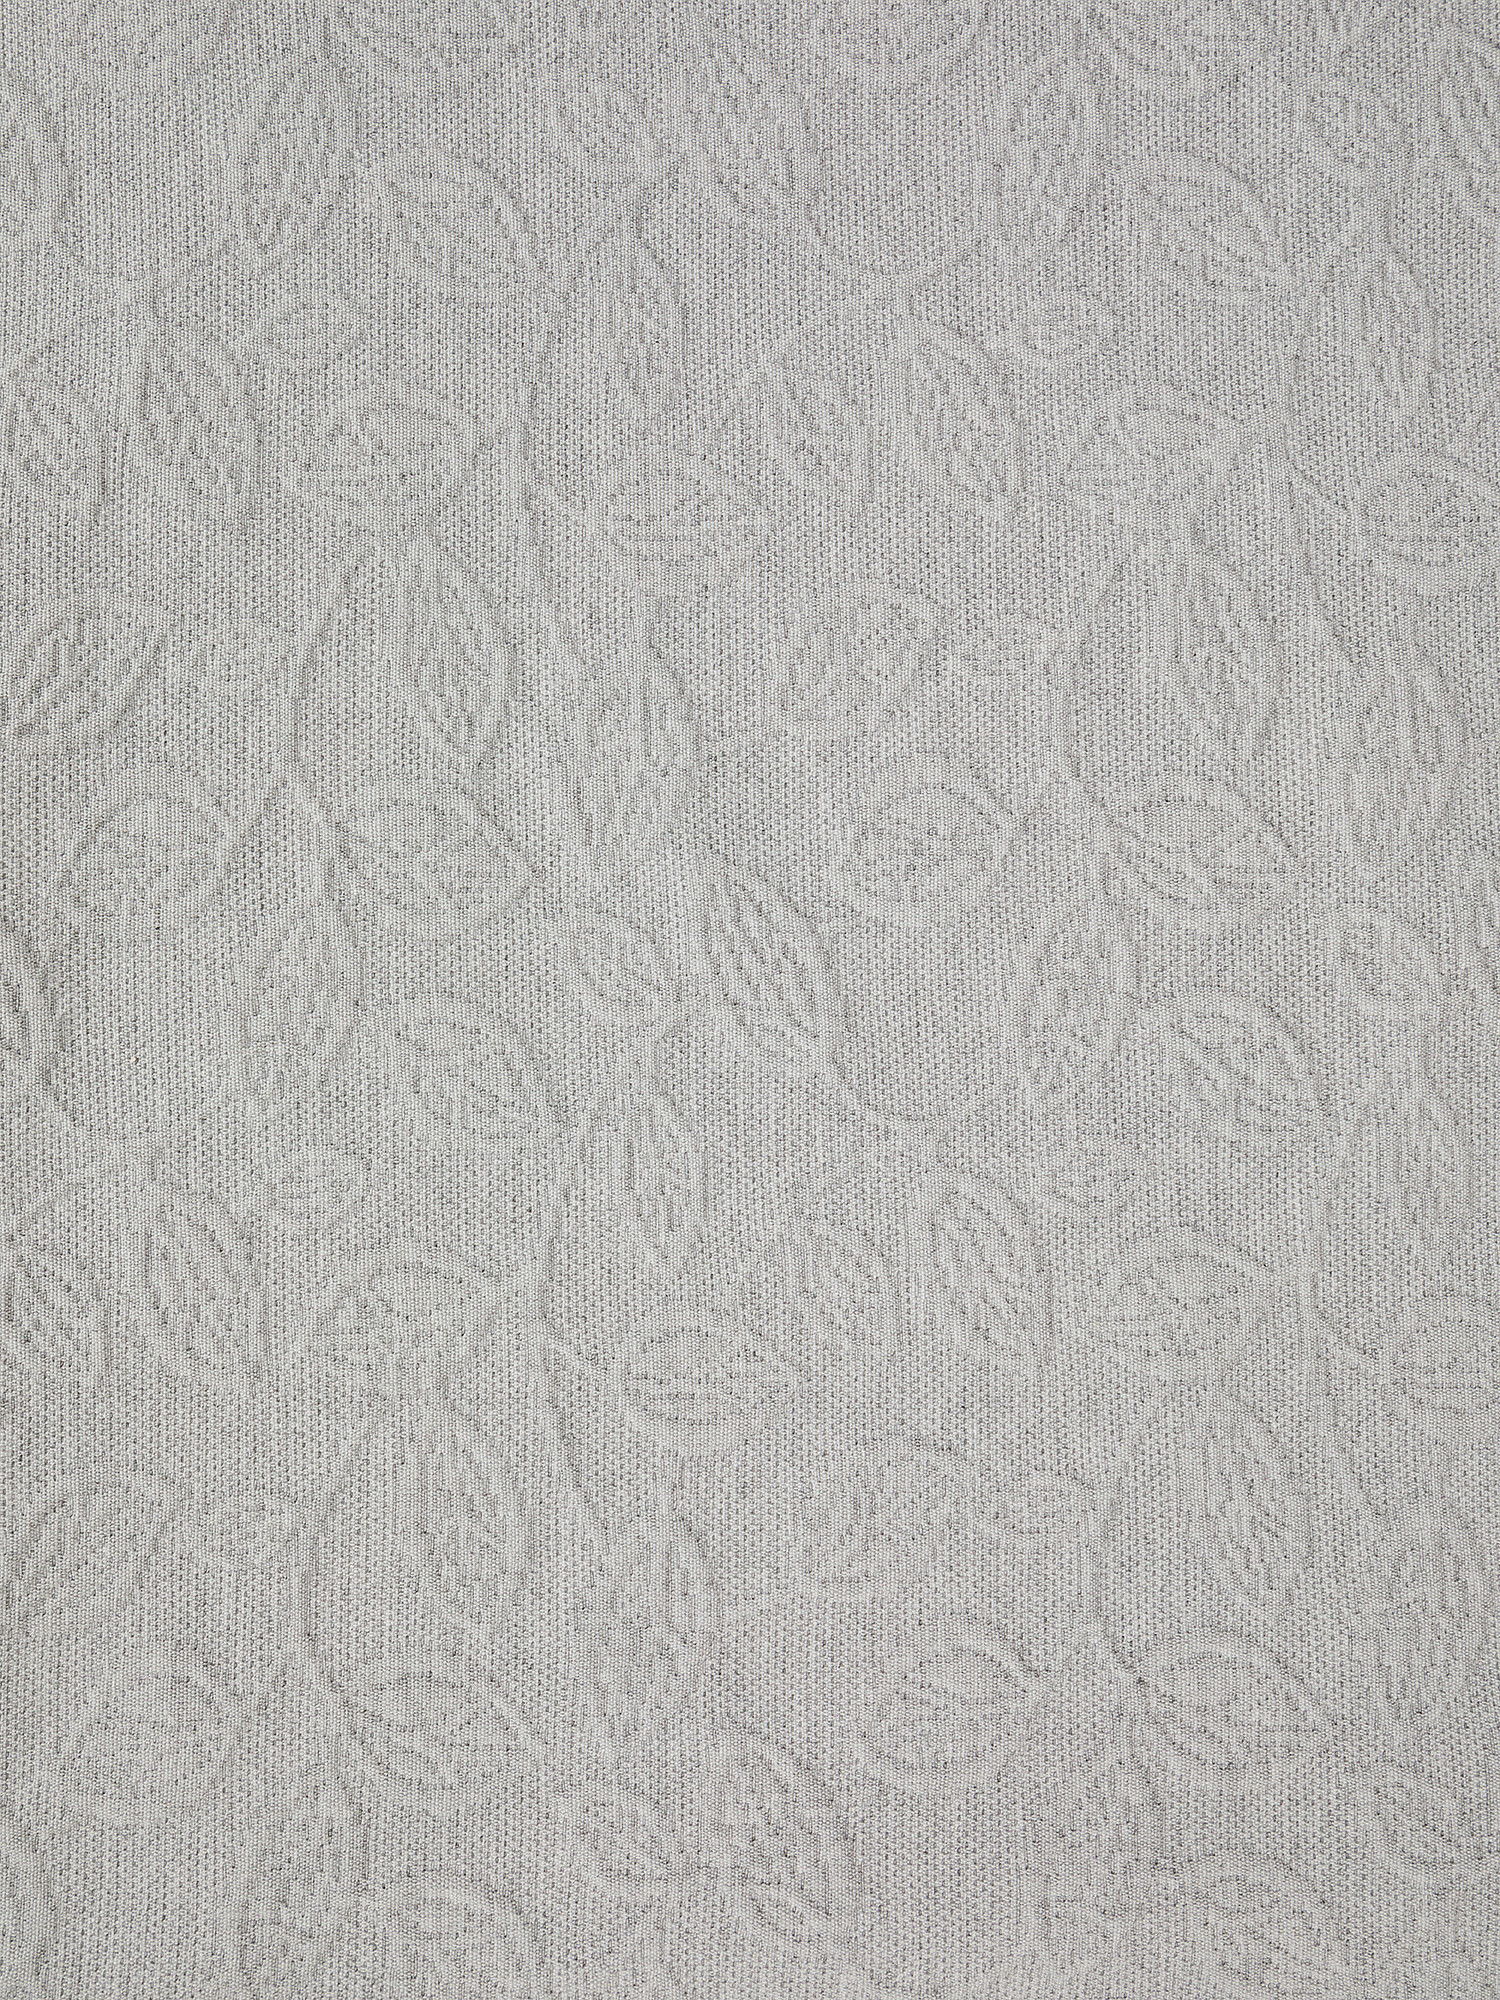 Copriletto cotone tinta unita motivo a rilievo, Grigio, large image number 1